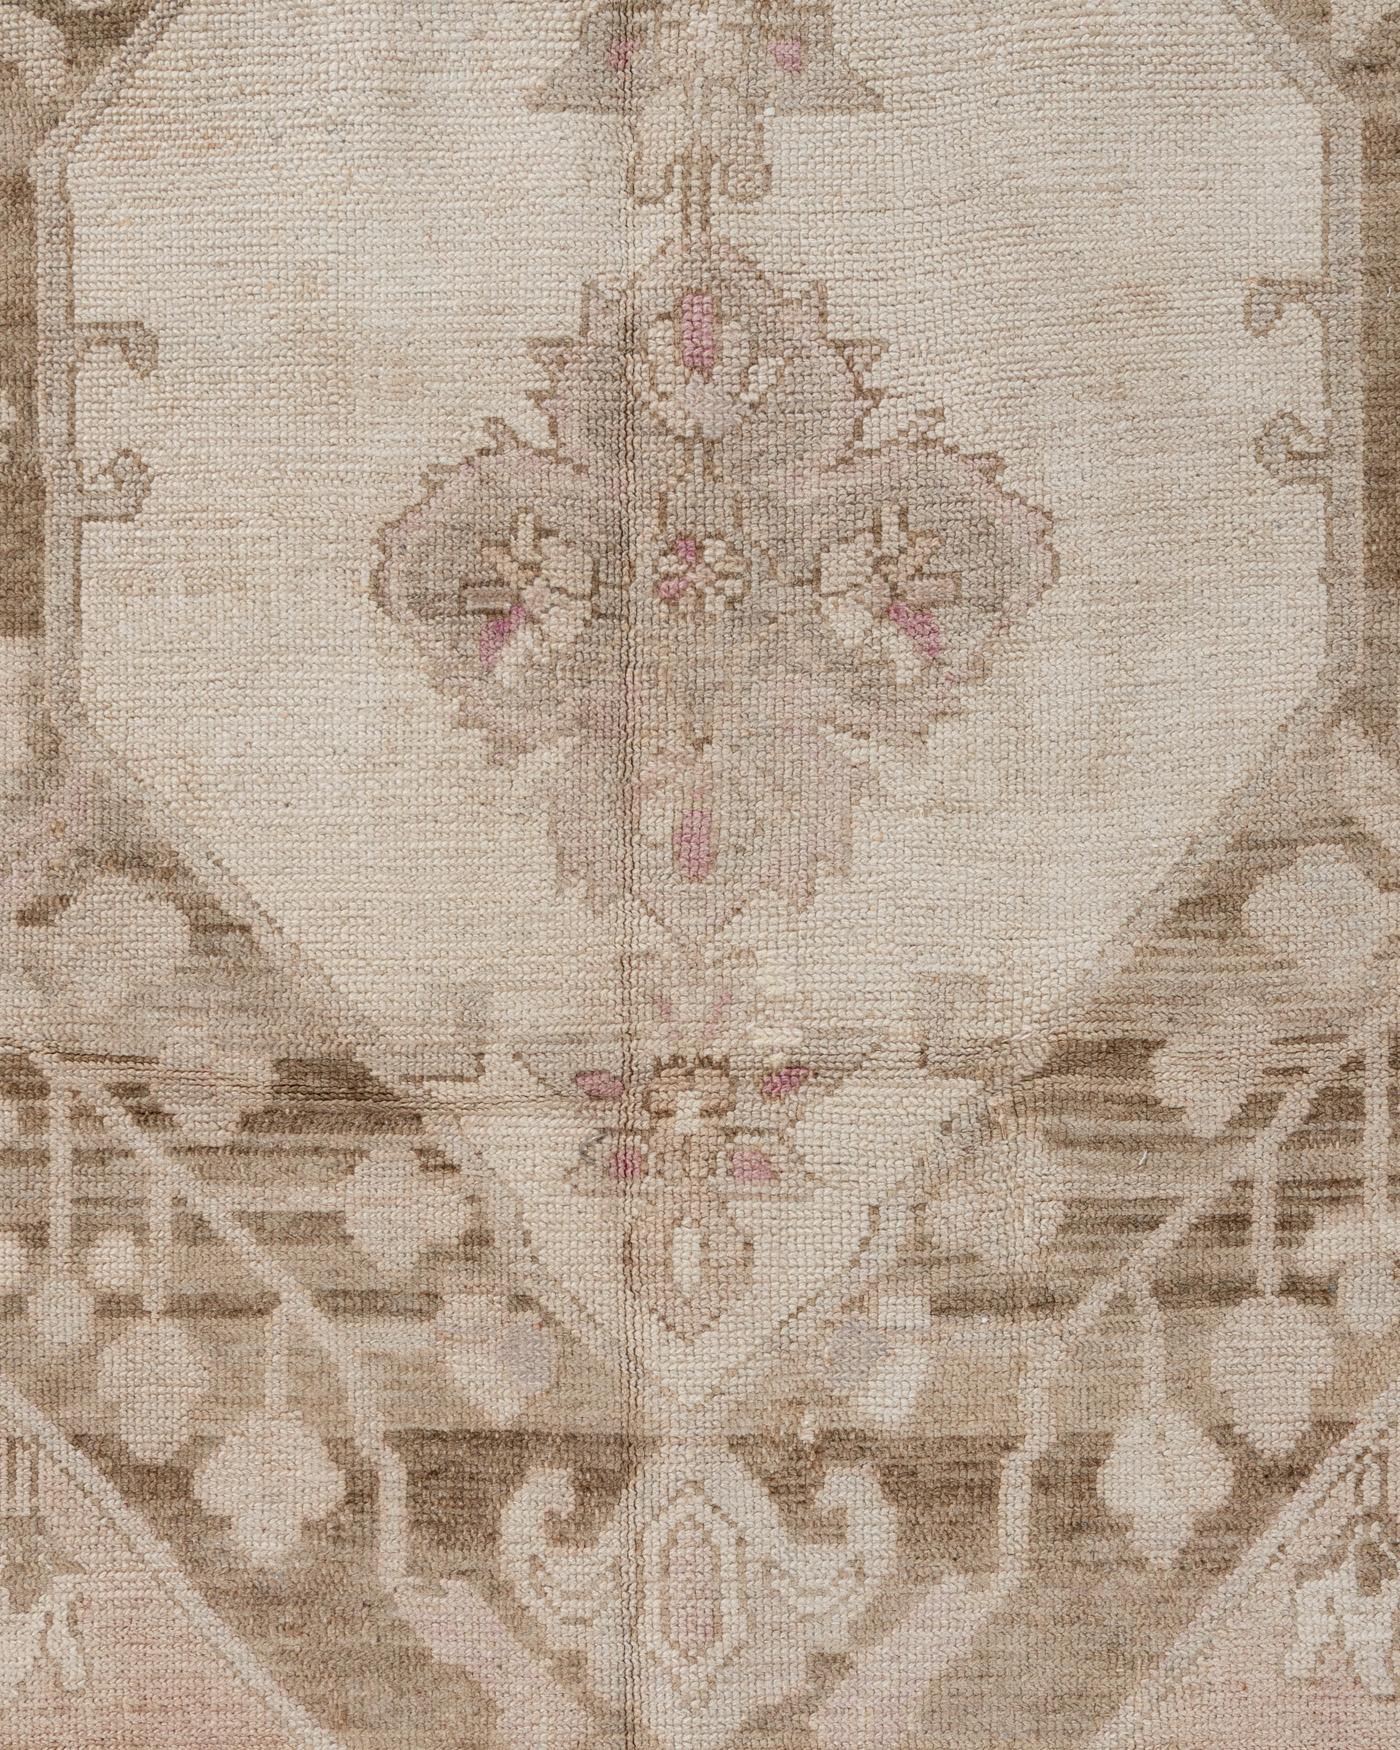 Vieux tapis turc Kars 9'11 X 11'10. Provenant de Kars, dans le nord-est de la Turquie, ces tapis vintage de couleur claire, noués à la main, sont similaires aux Oushaks et font partie des tapis orientaux les plus populaires, connus pour la haute